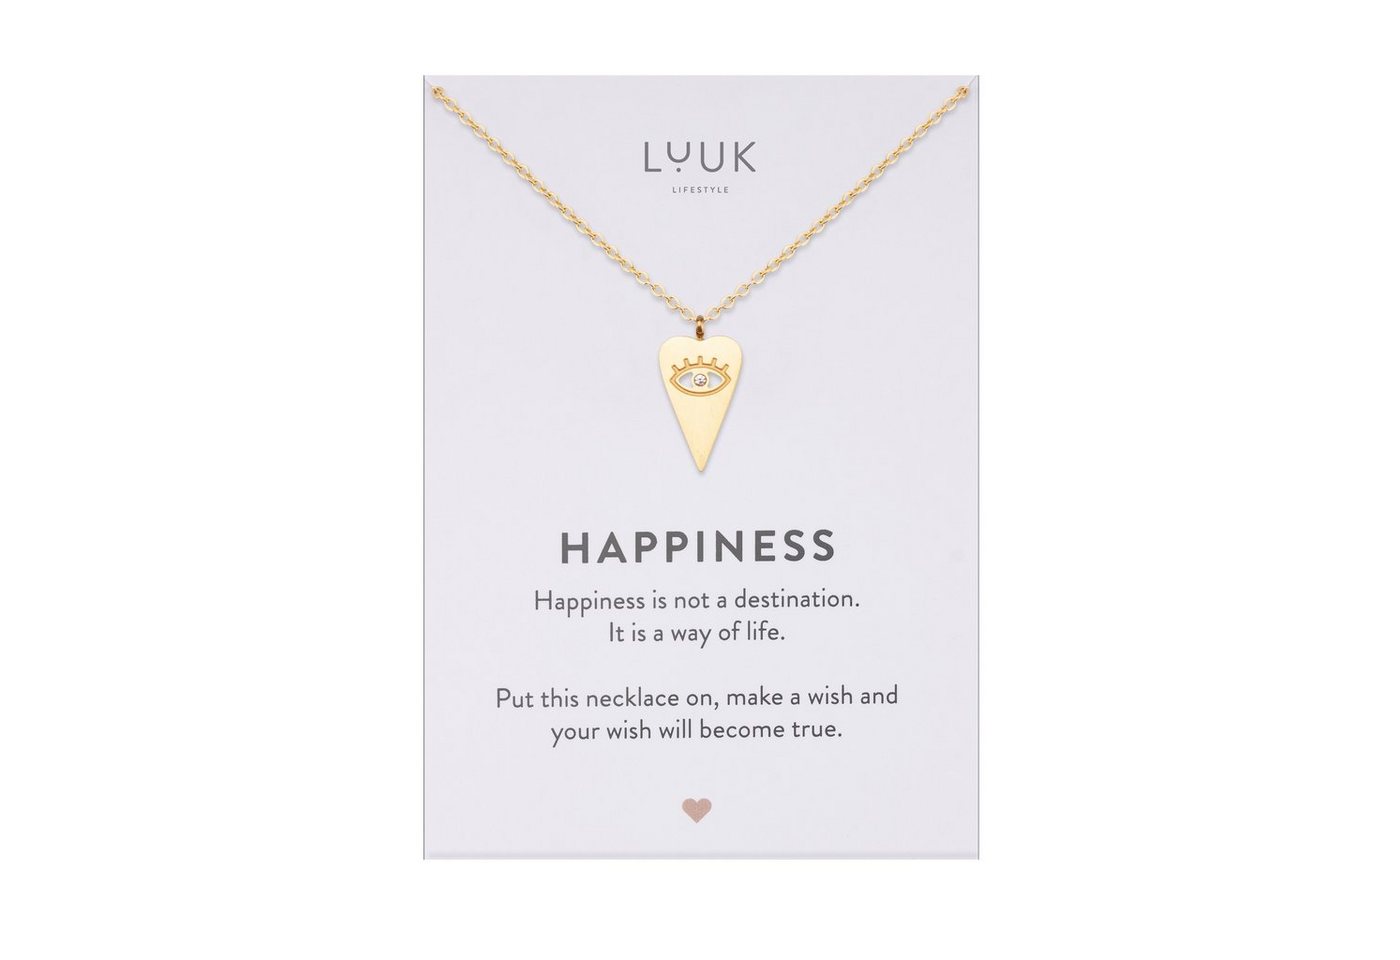 LUUK LIFESTYLE Kette mit Anhänger Herz & Nazar, mit Happiness Spruchkarte, minimalistischer Style von LUUK LIFESTYLE